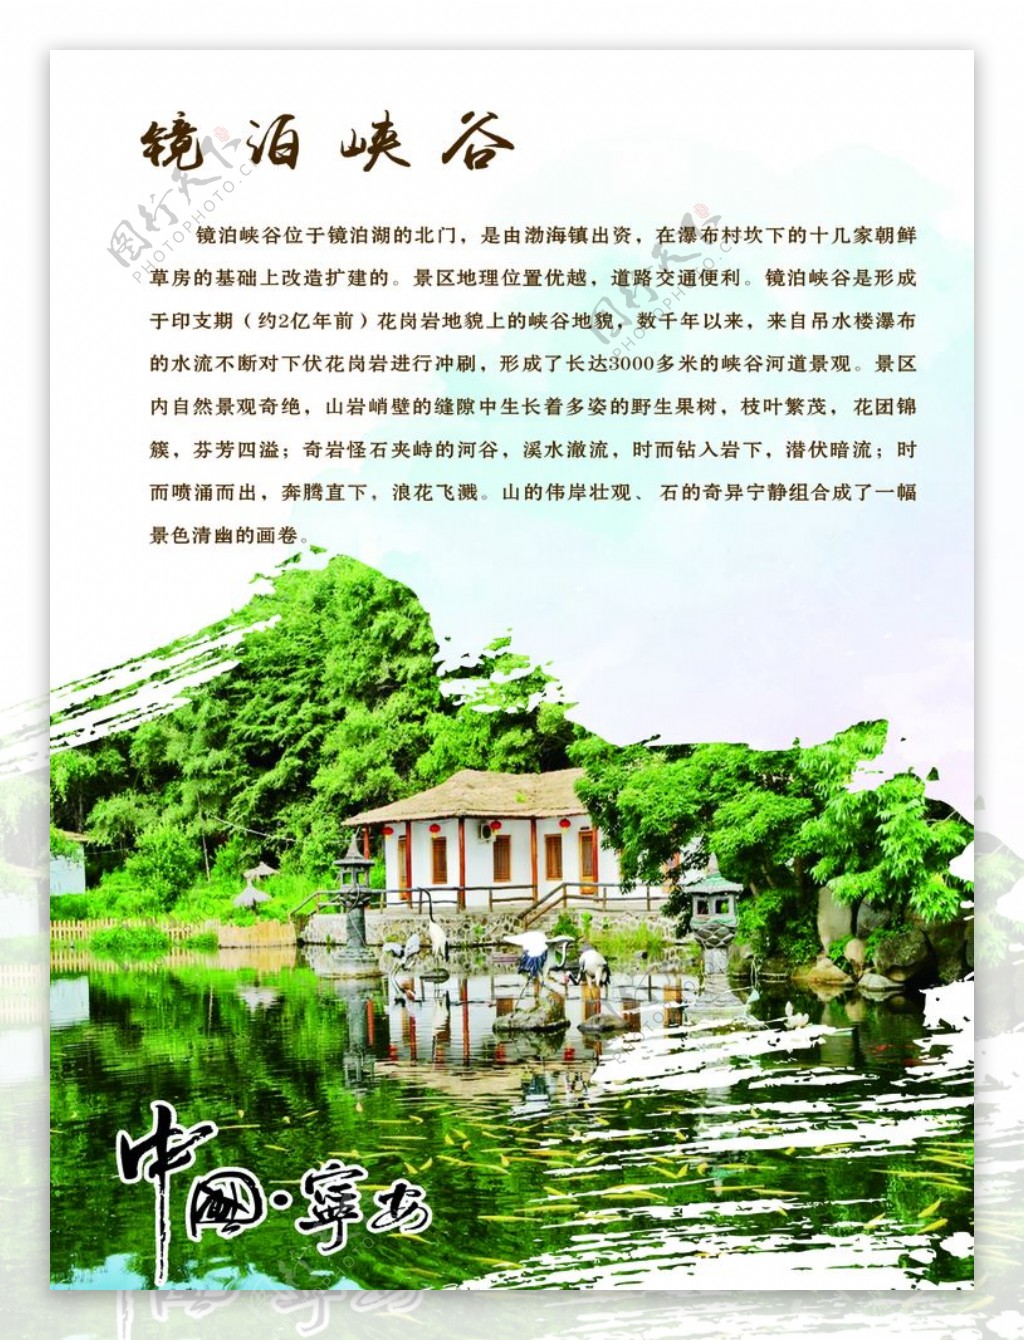 宁安市文化游系列镜泊峡谷